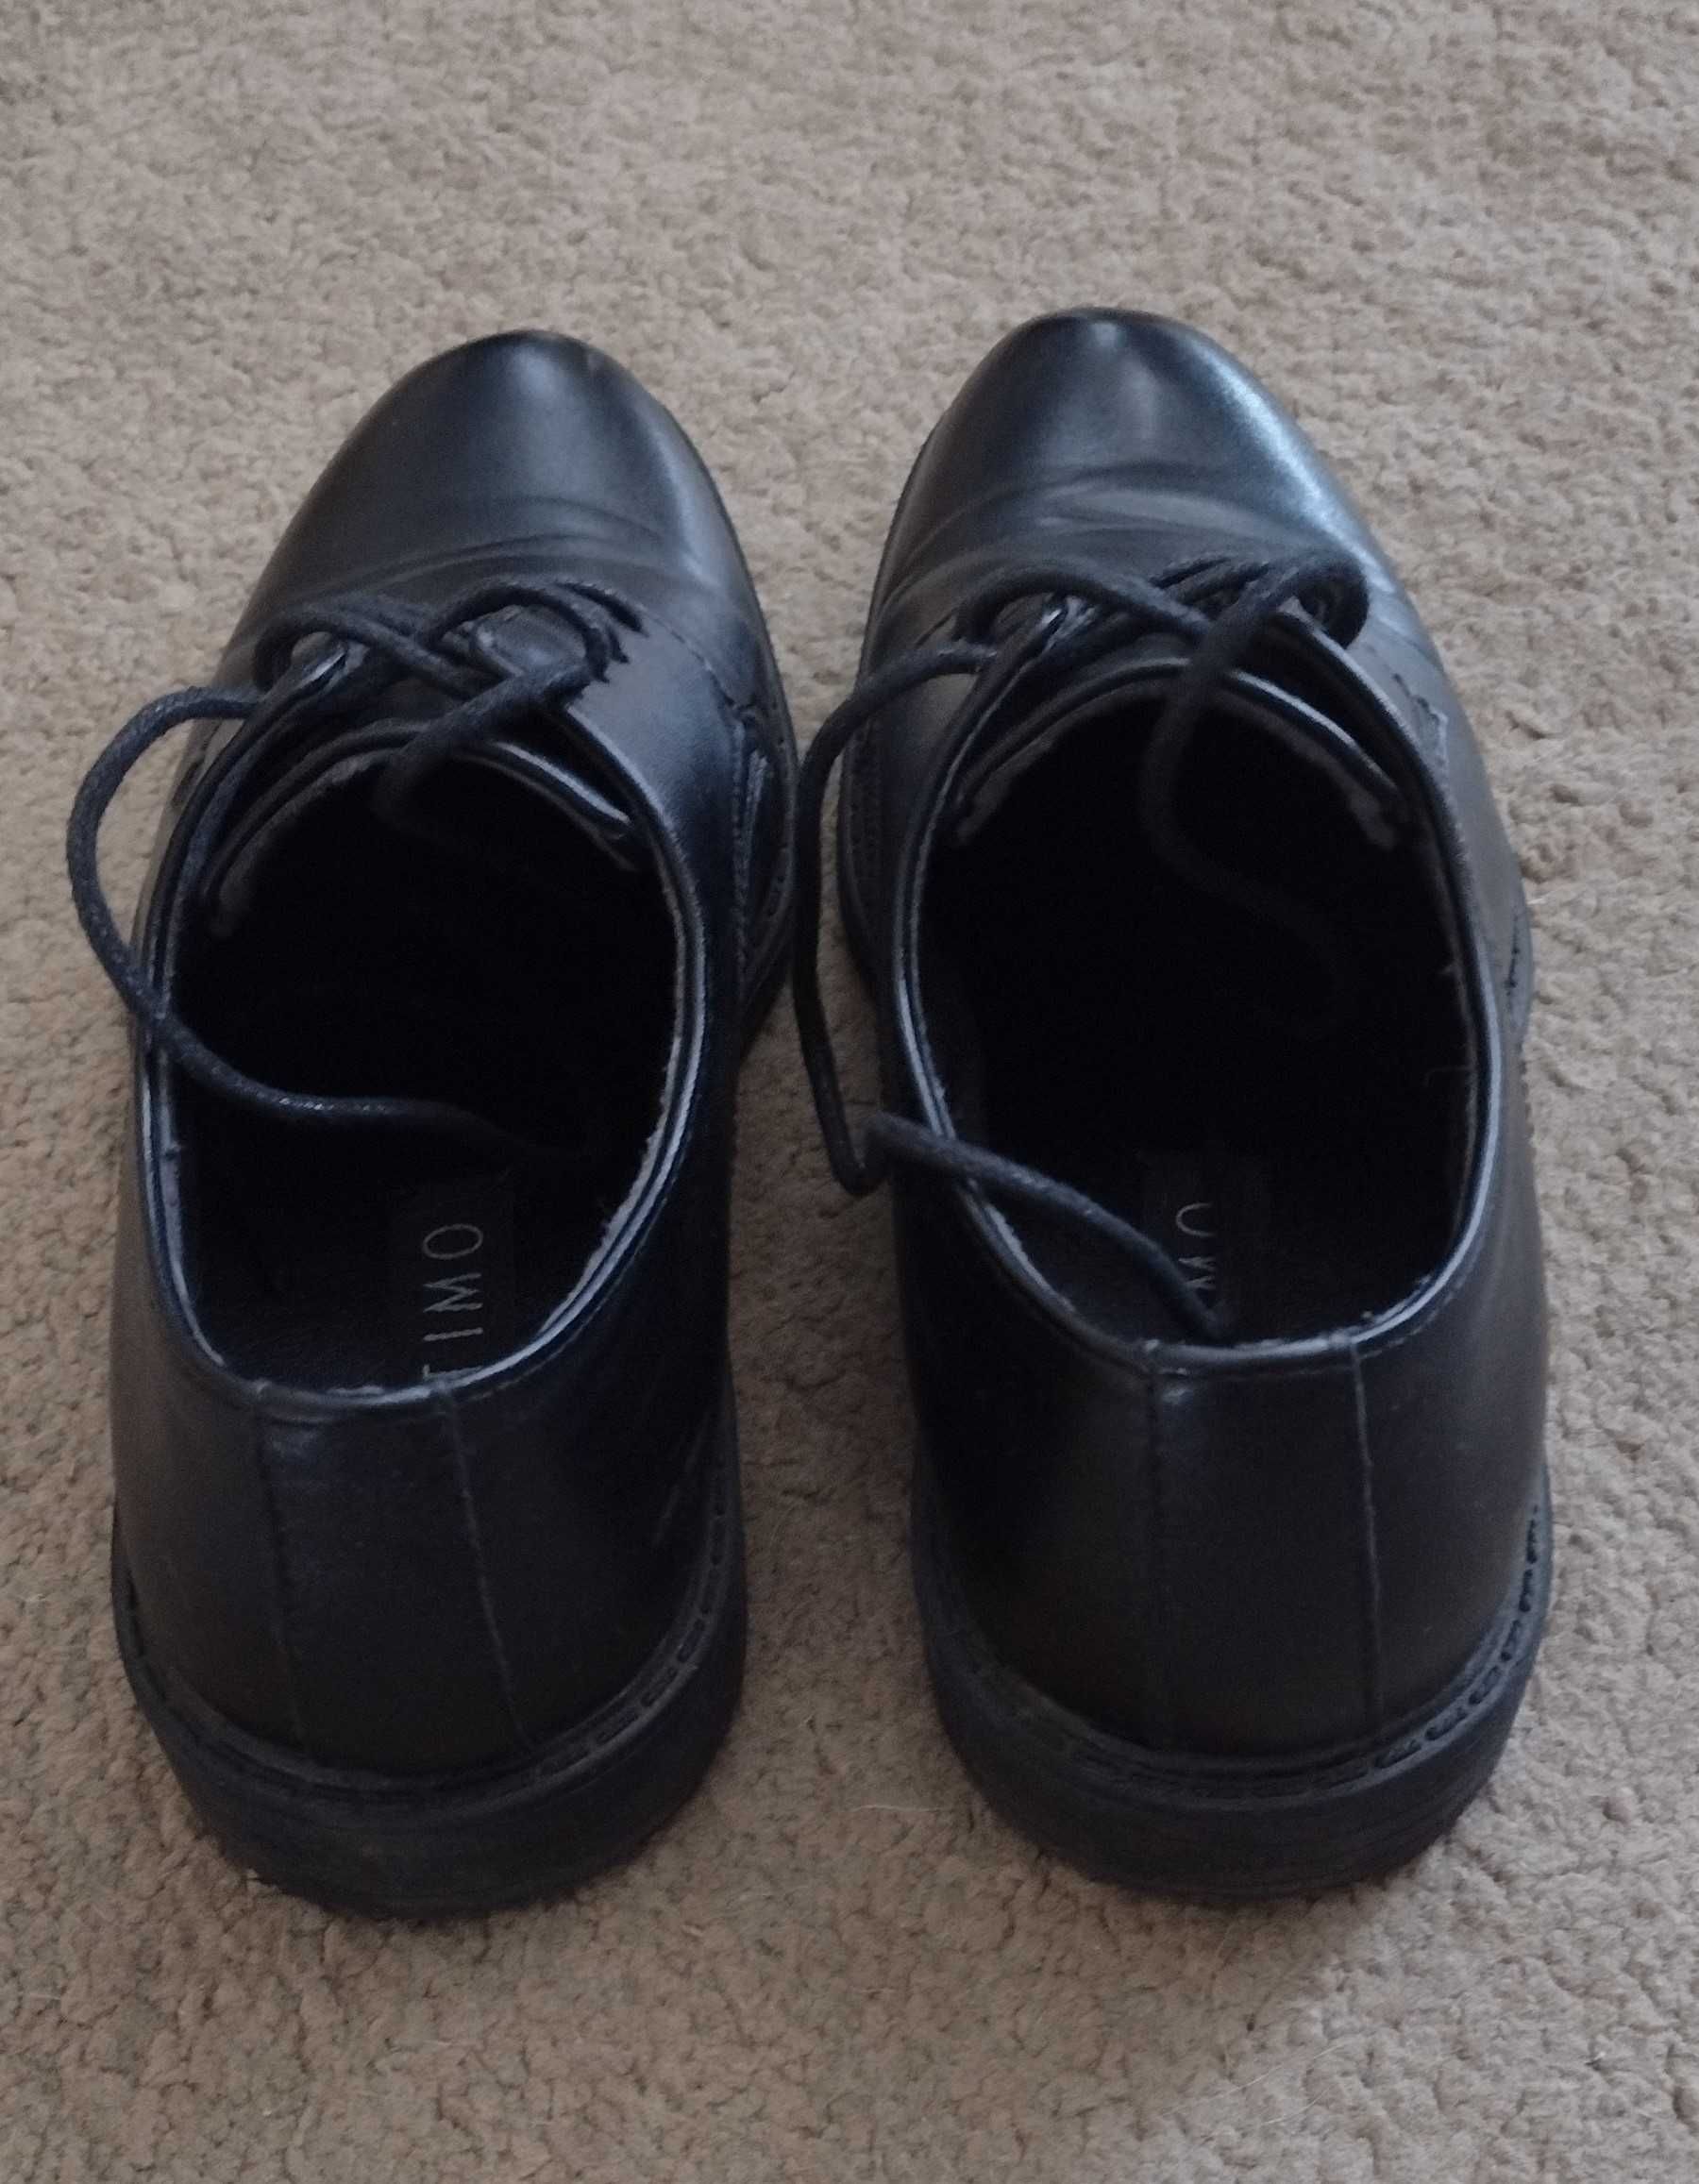 Buty czarne chłopięce komunijne rozm. 34